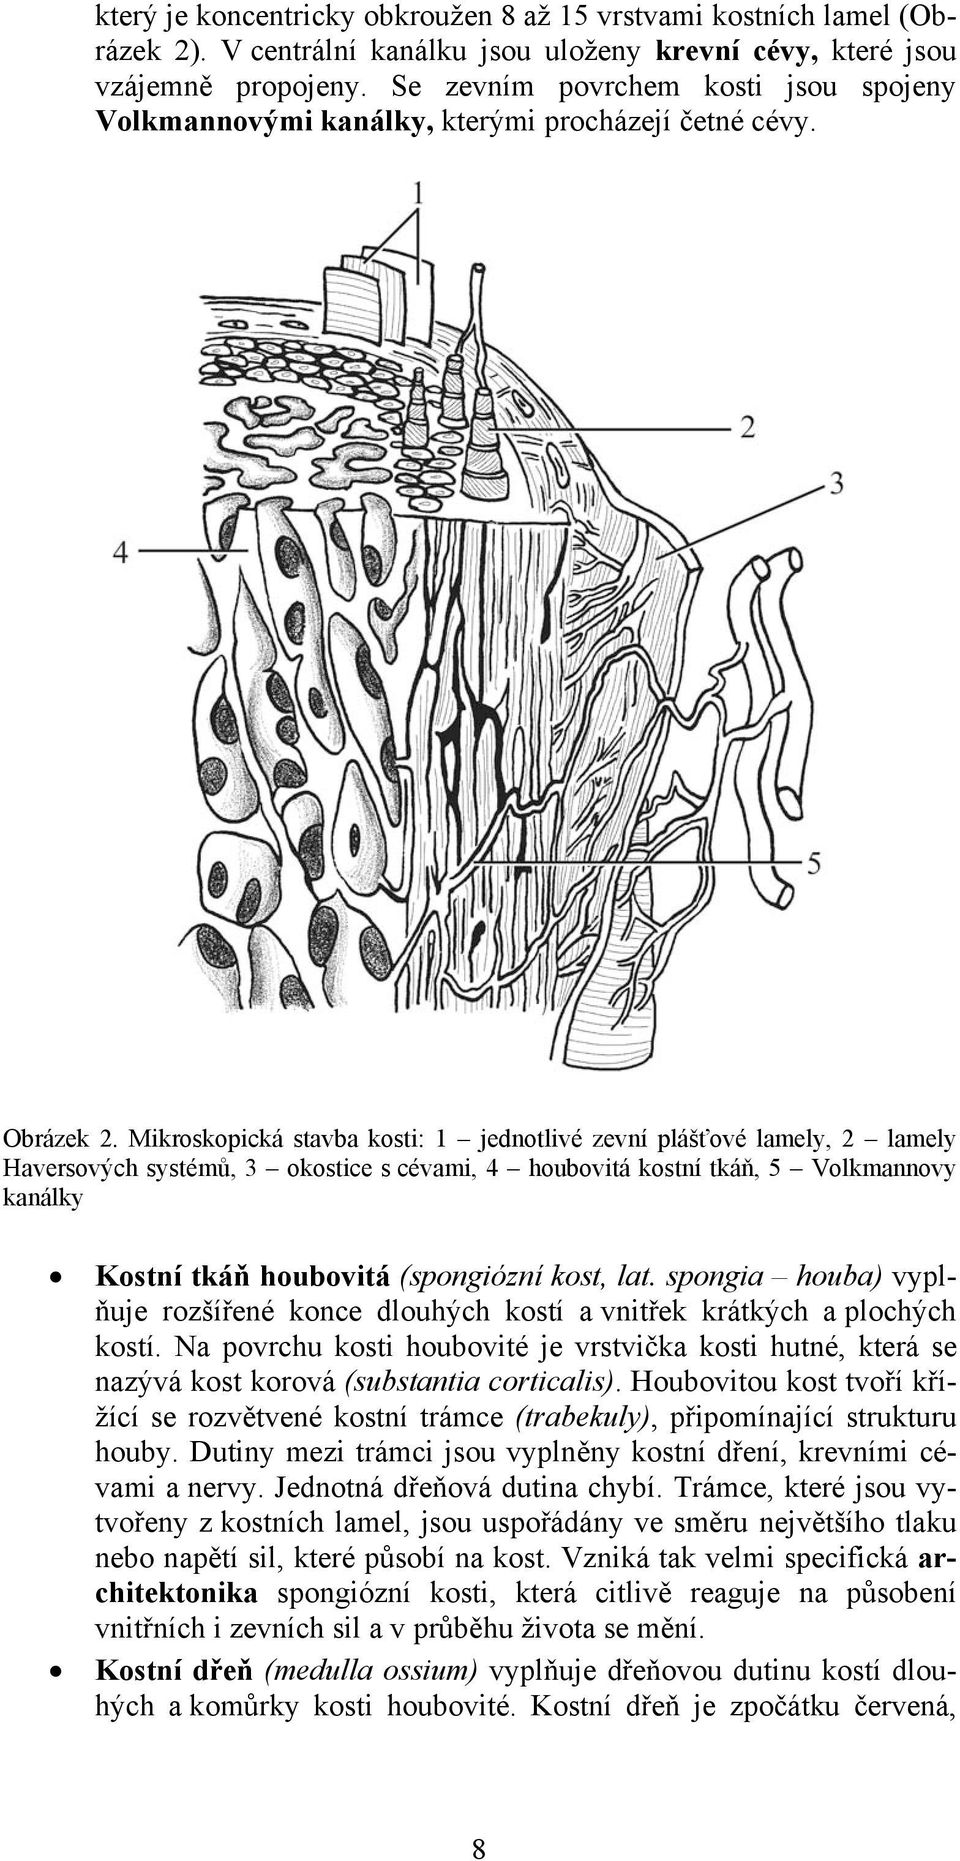 Mikroskopická stavba kosti: 1 jednotlivé zevní plášťové lamely, 2 lamely Haversových systémů, 3 okostice s cévami, 4 houbovitá kostní tkáň, 5 Volkmannovy kanálky Kostní tkáň houbovitá (spongiózní